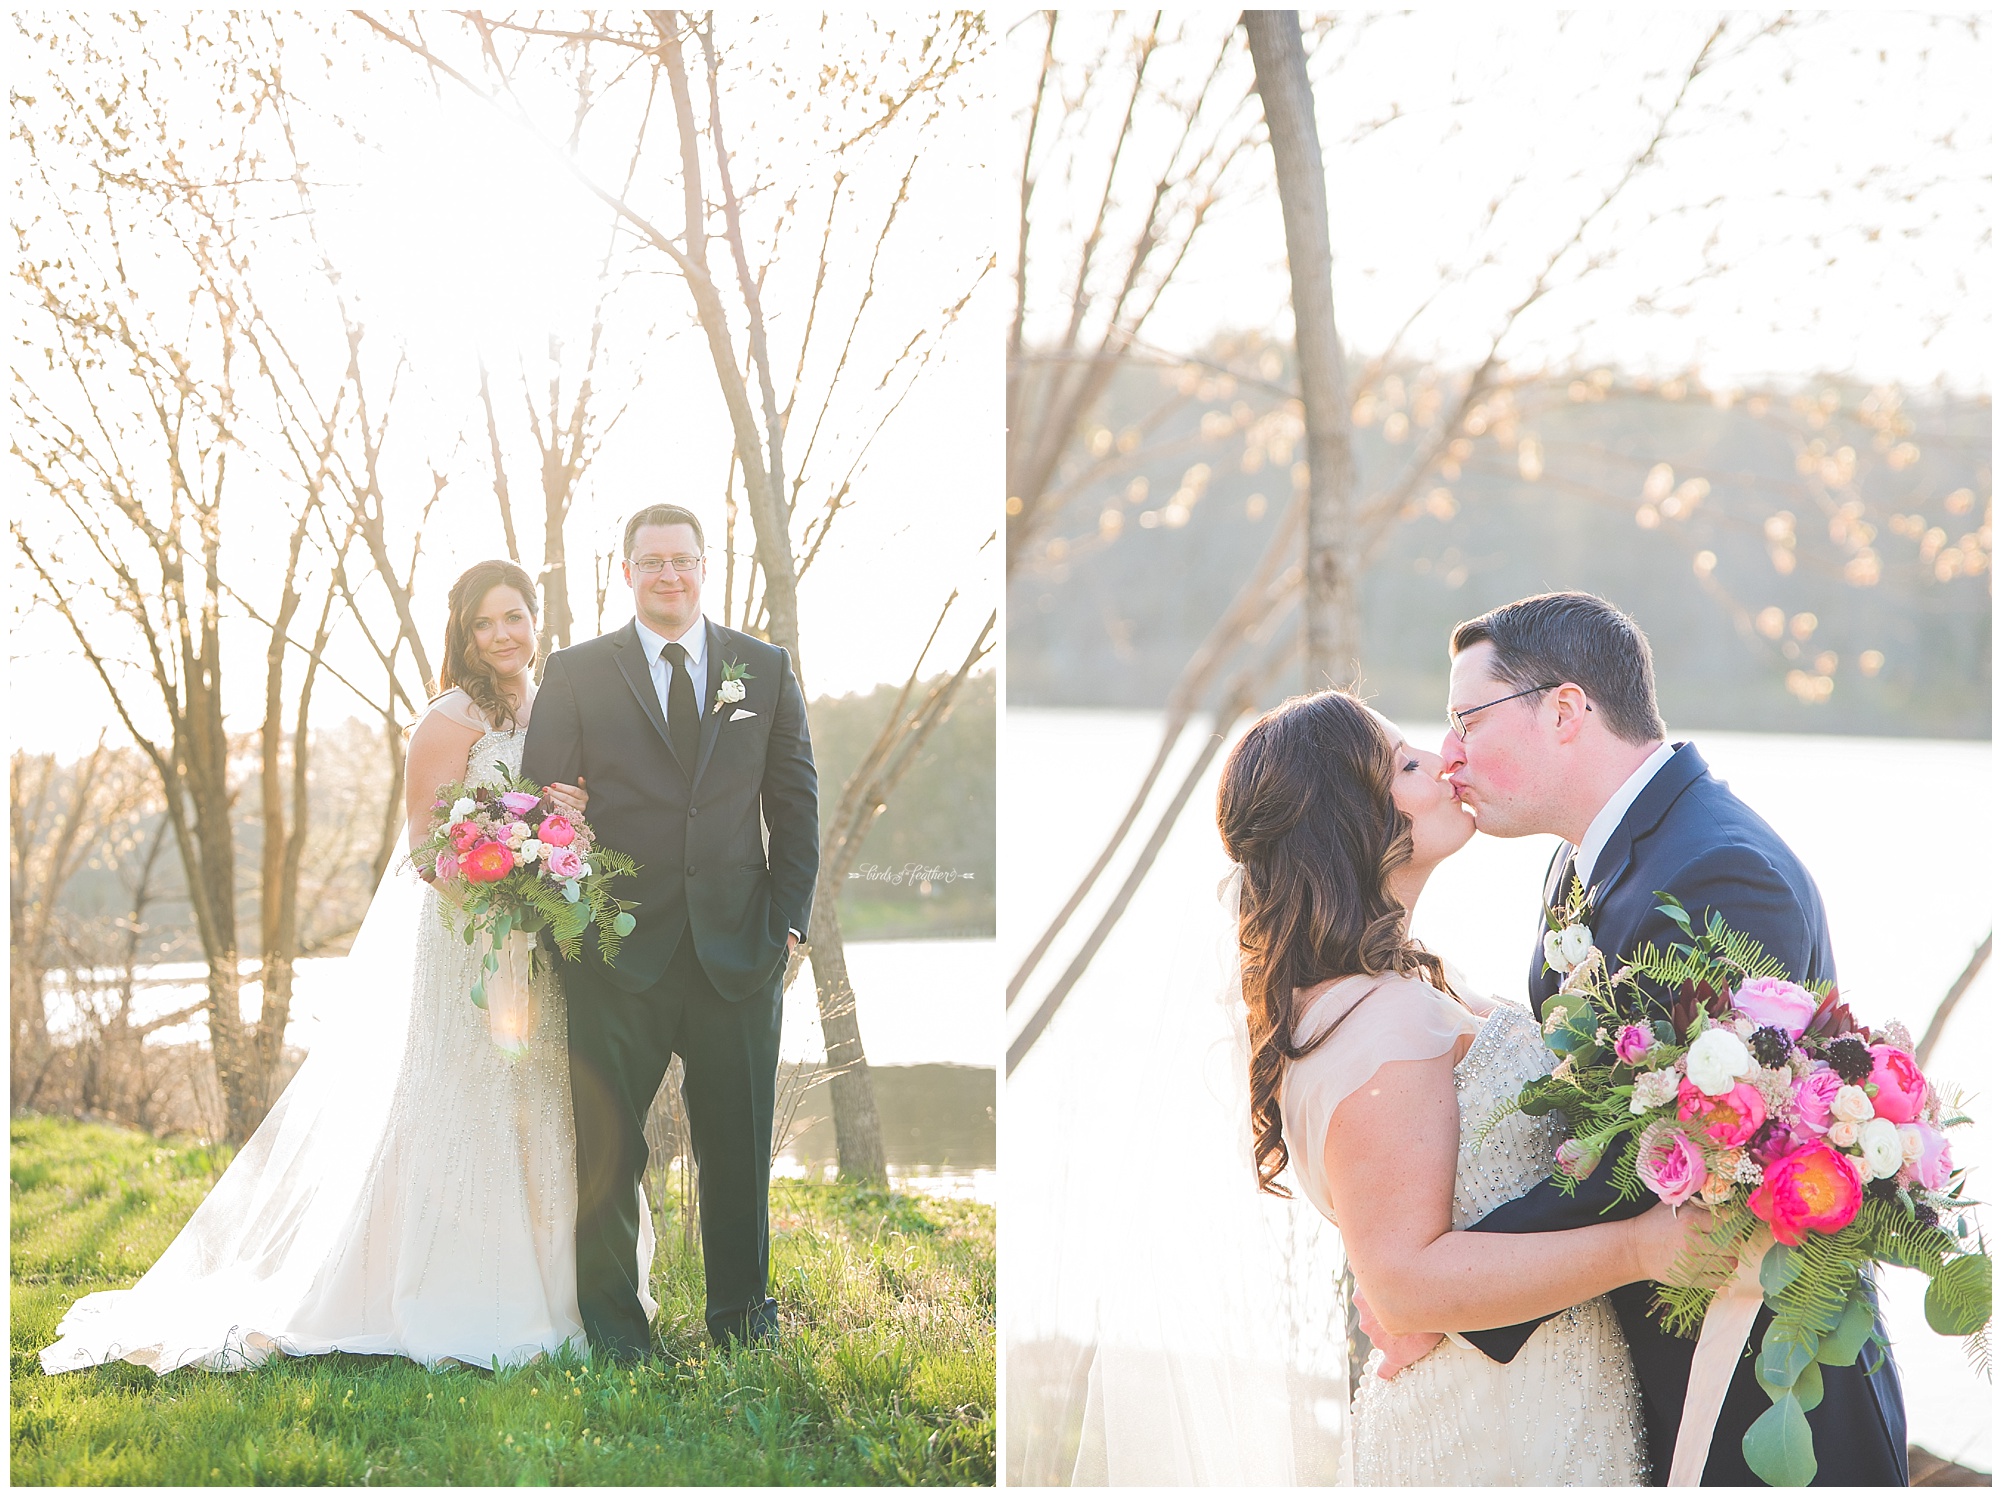 Kristin & Jon | Lake House Inn Wedding, Perkasie PA | Birds of a Feather Photography